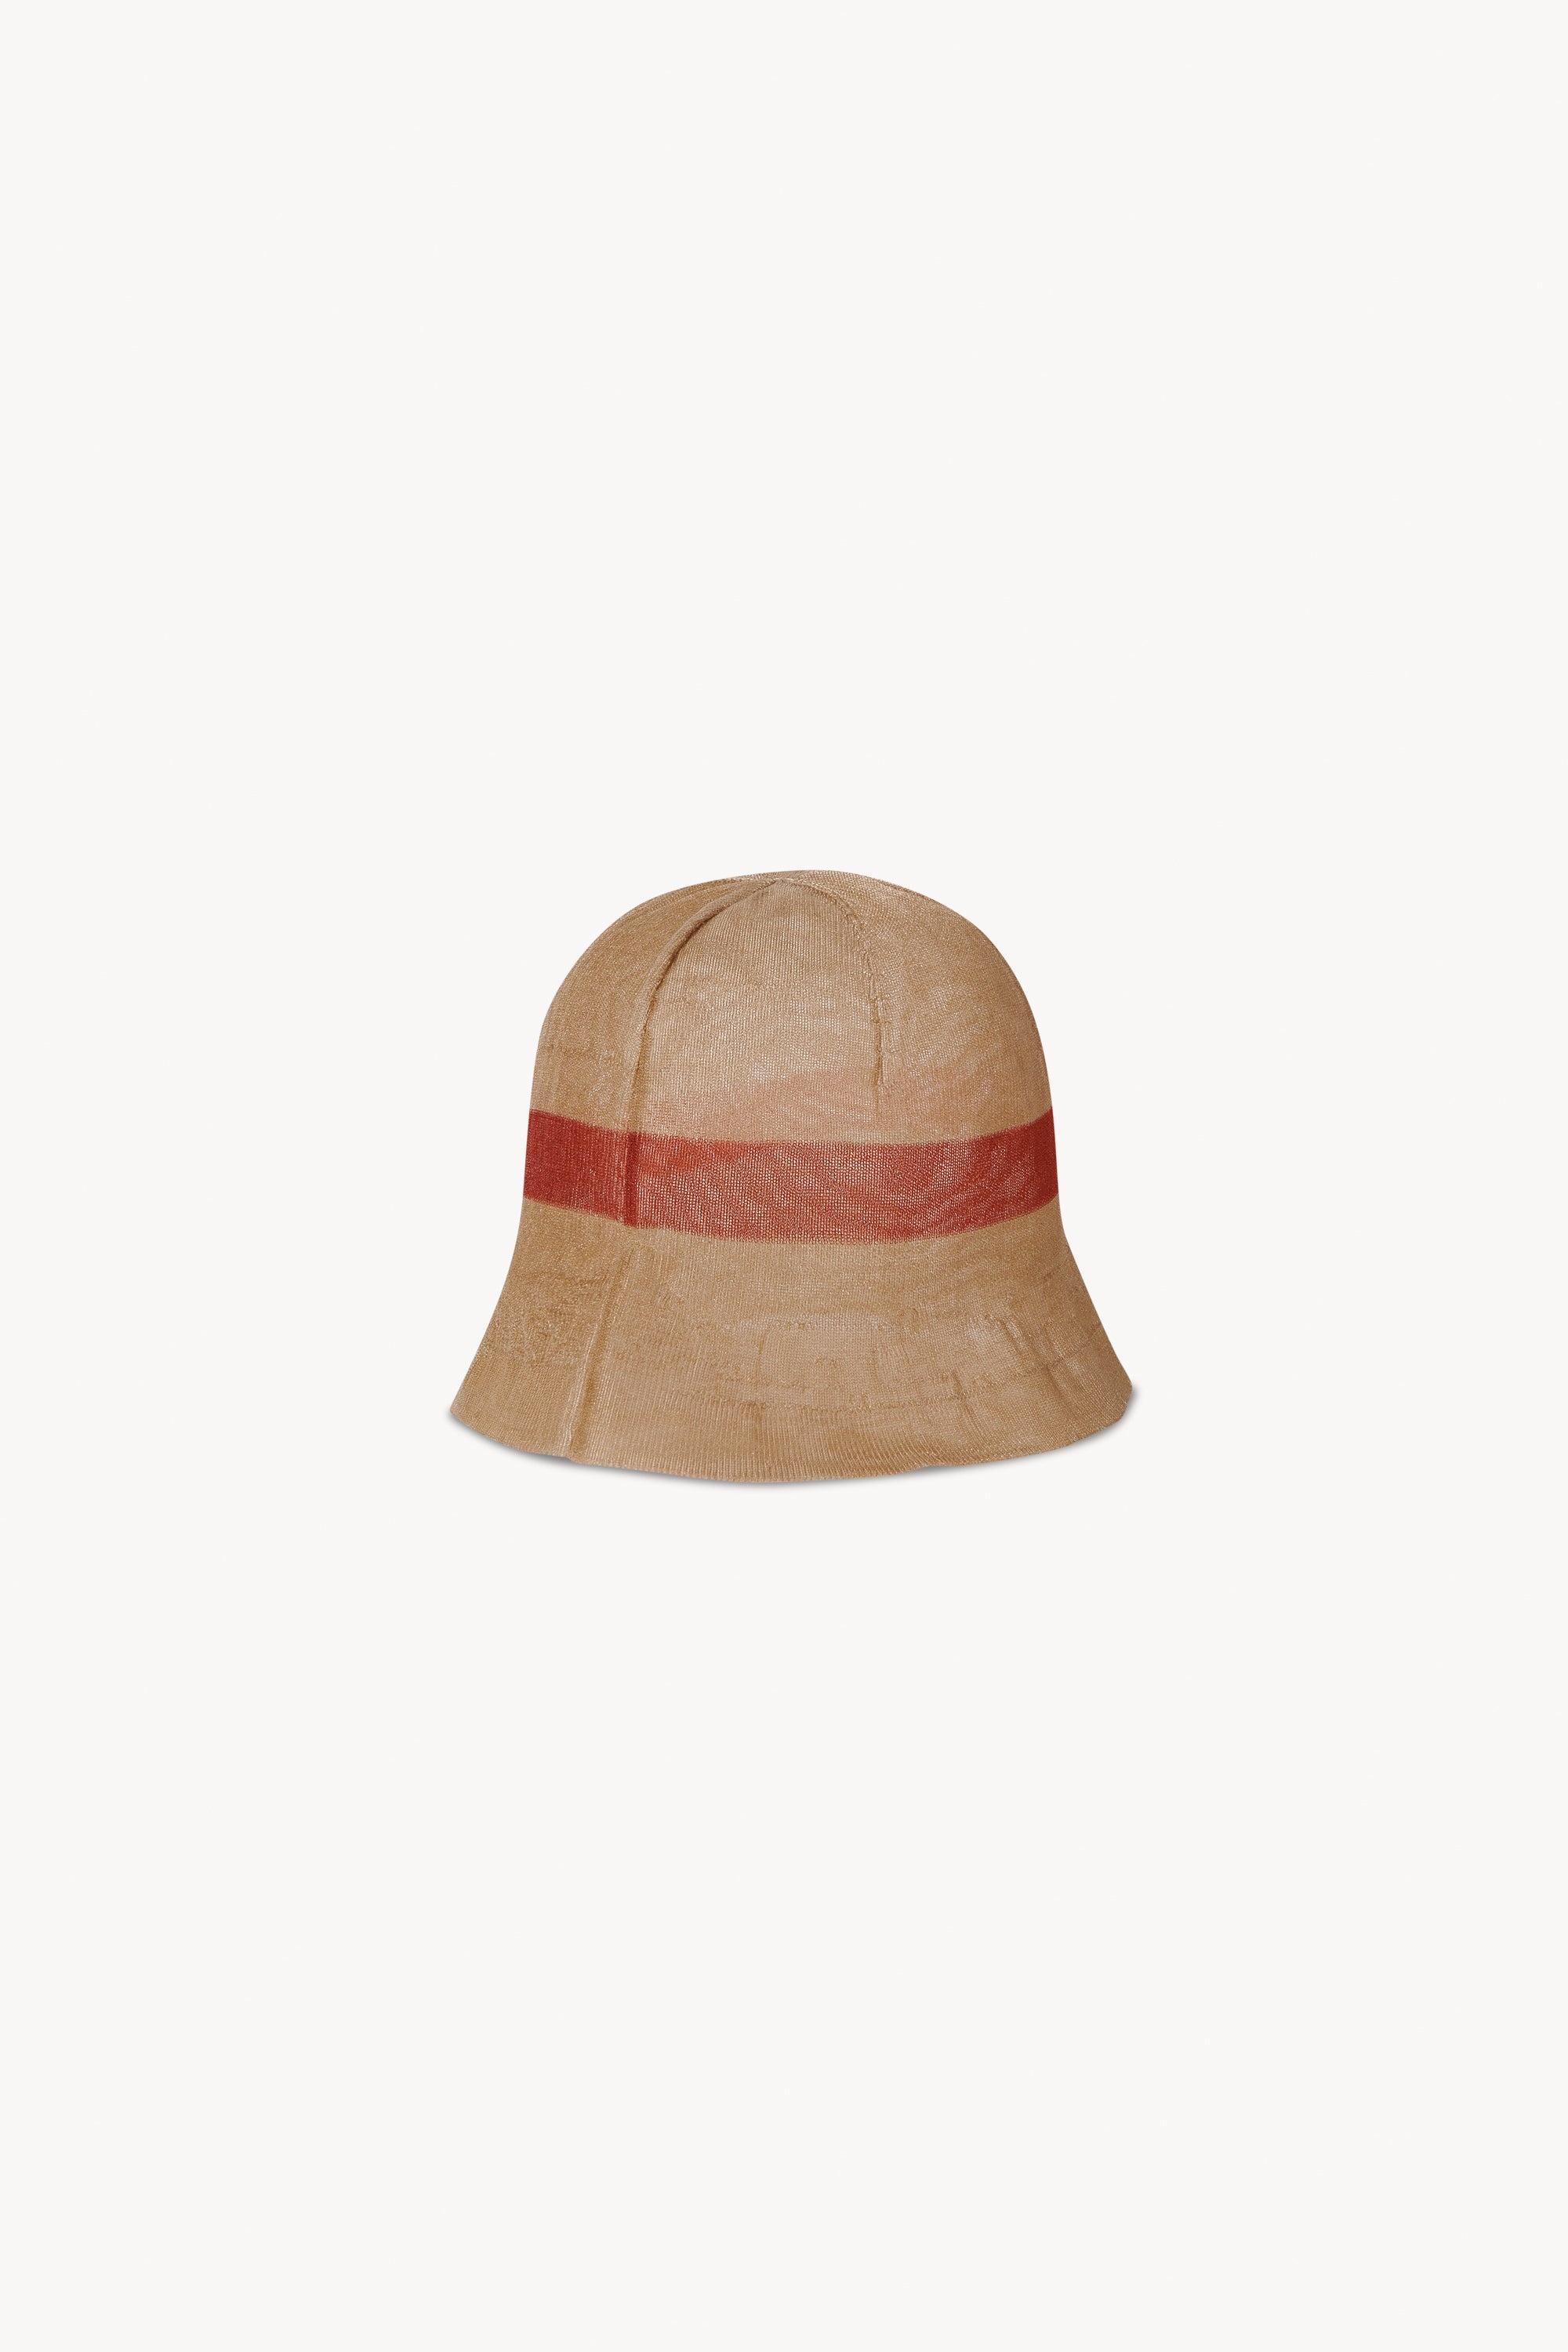 Indo Hat in Nylon - 2